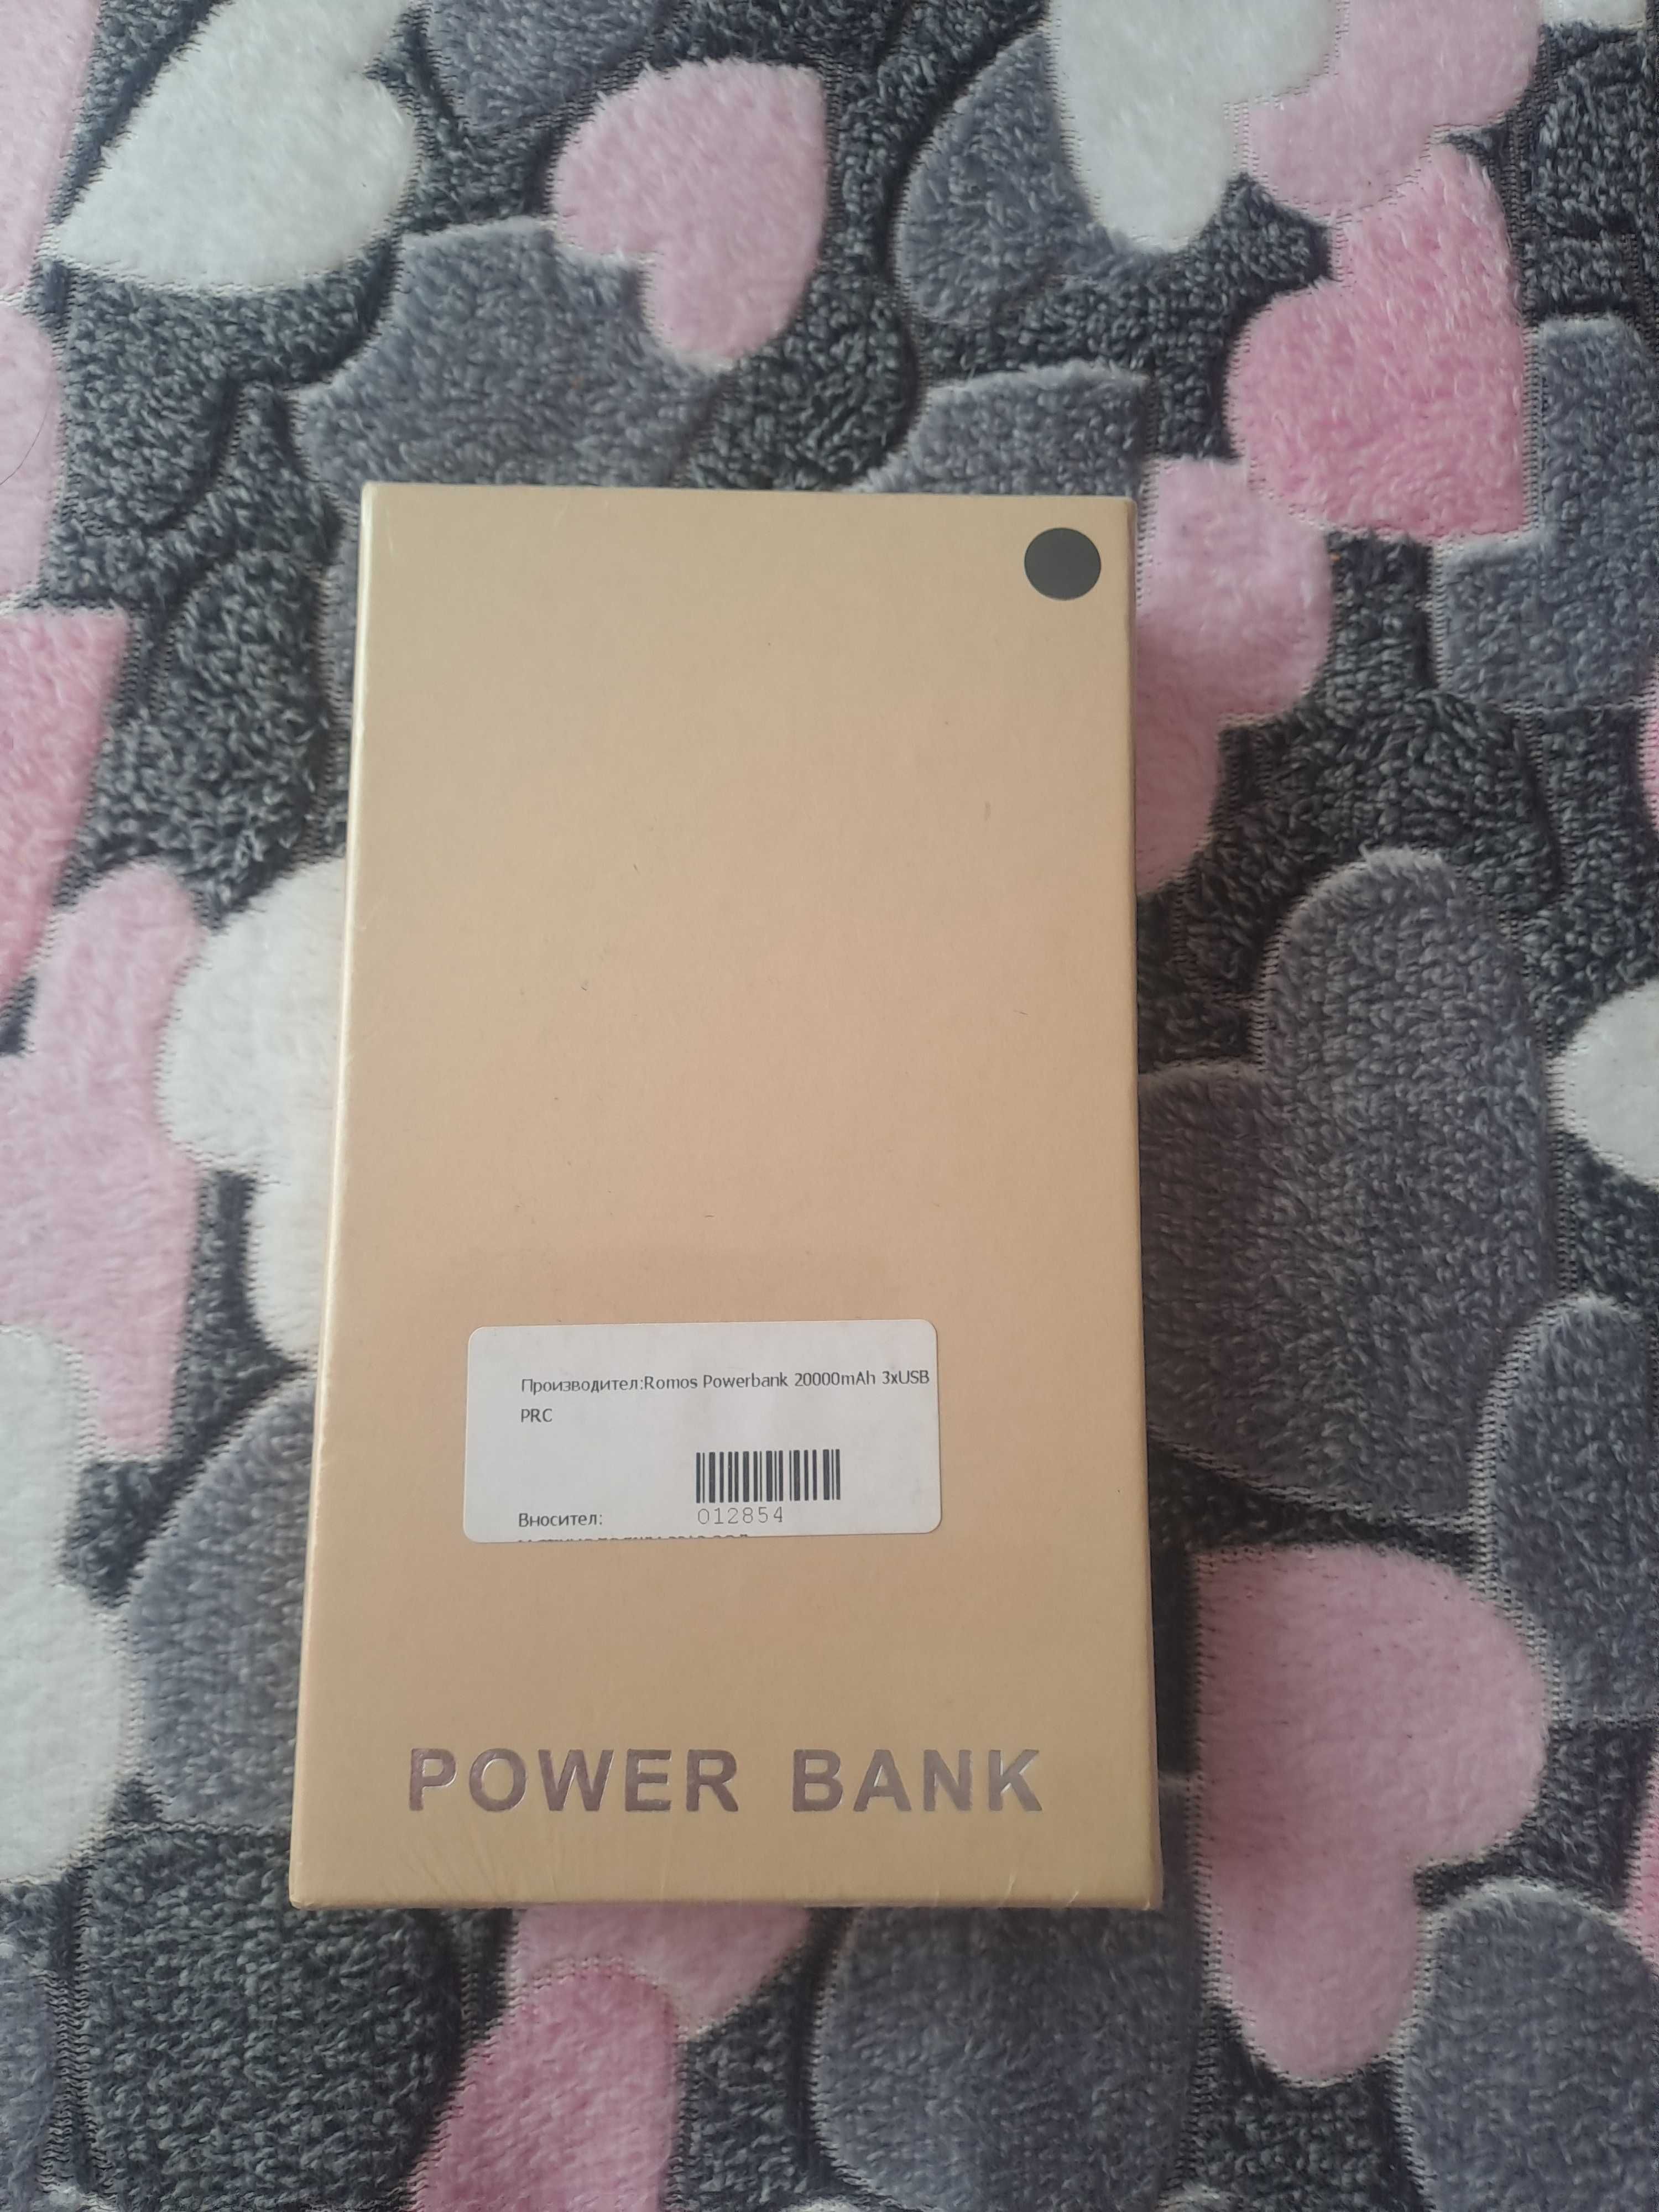 Външна батерия Power Bank MBX 20000 mAh с 3 USB изхода, Черен цвят